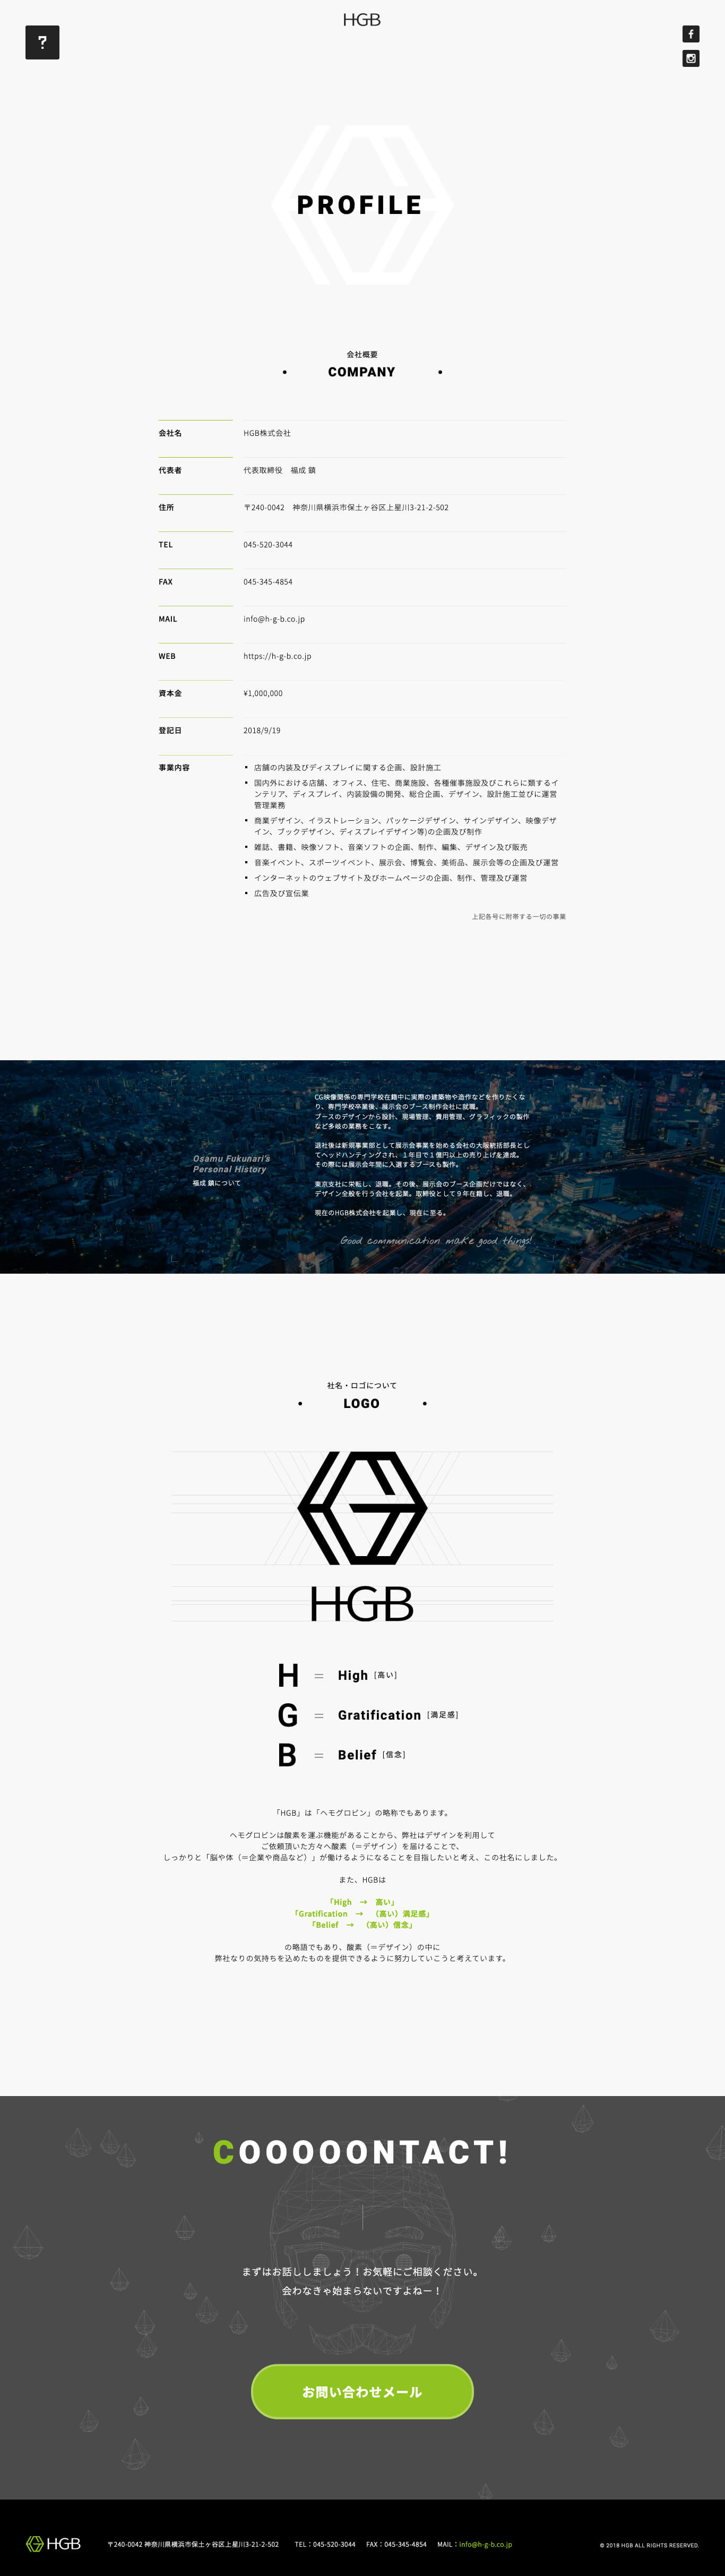 HGB Corporate Site image